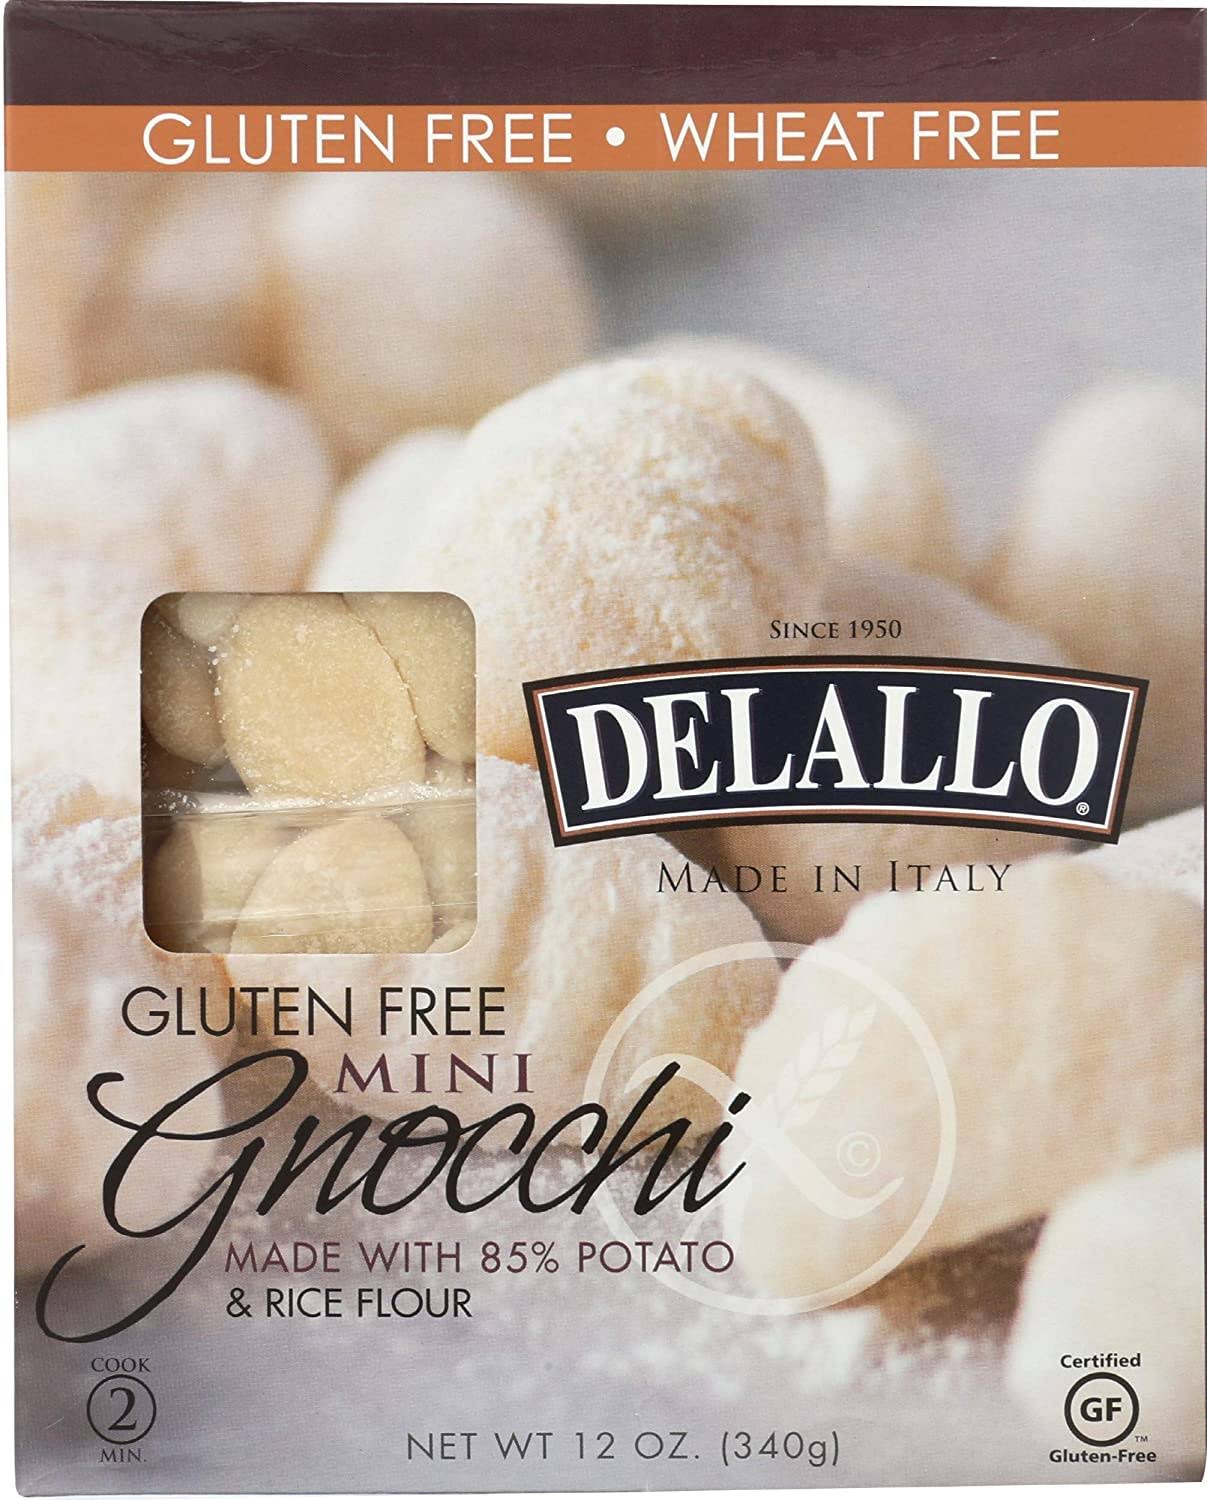 Delallo Gluten Free Gnocchi - Potato and Rice, 12oz, 6pk